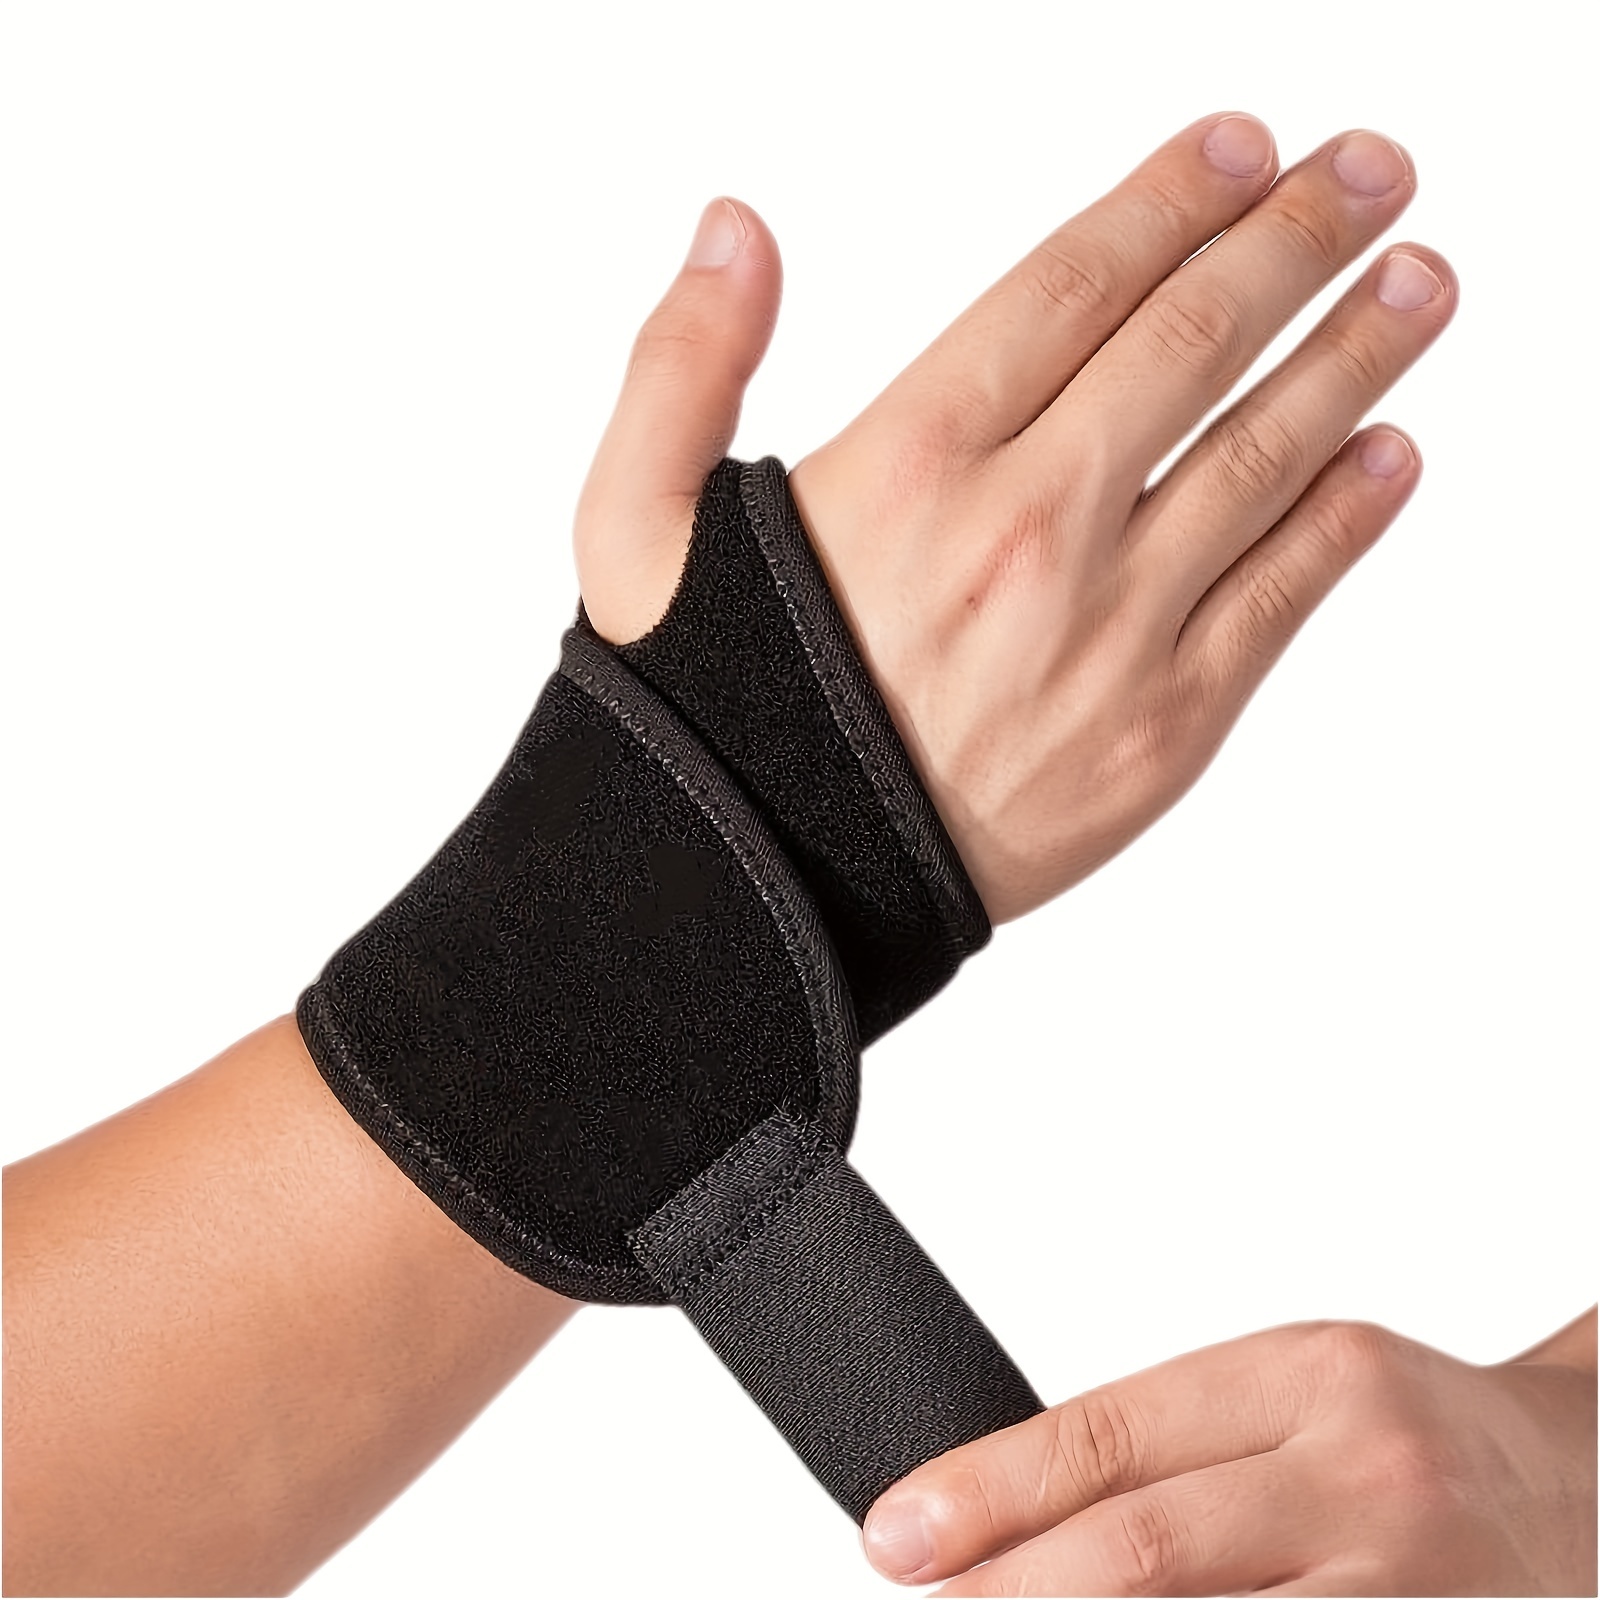 Acheter Protecteur de poignet en Silicone, 1 pièce, gants fixes pour doigts  et poignets, protection unique